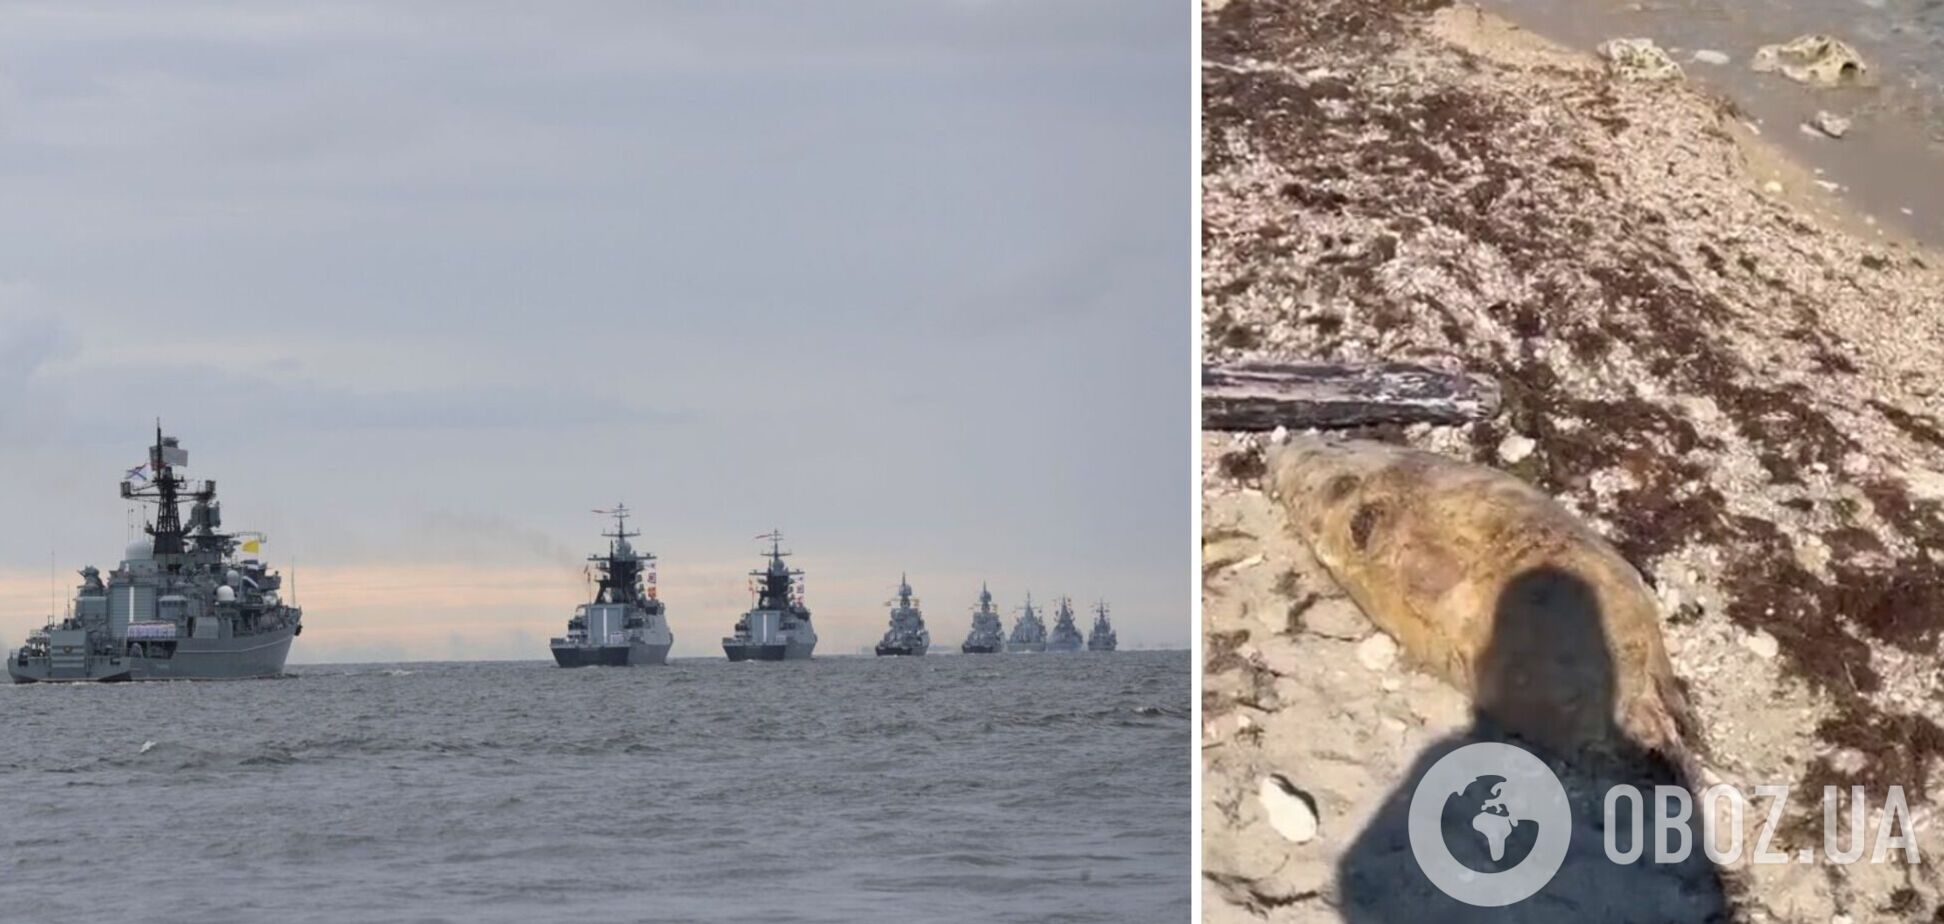 Возле оккупированного Крыма зафиксирована массовая гибель дельфинов из-за действий российских захватчиков. Фото и видео